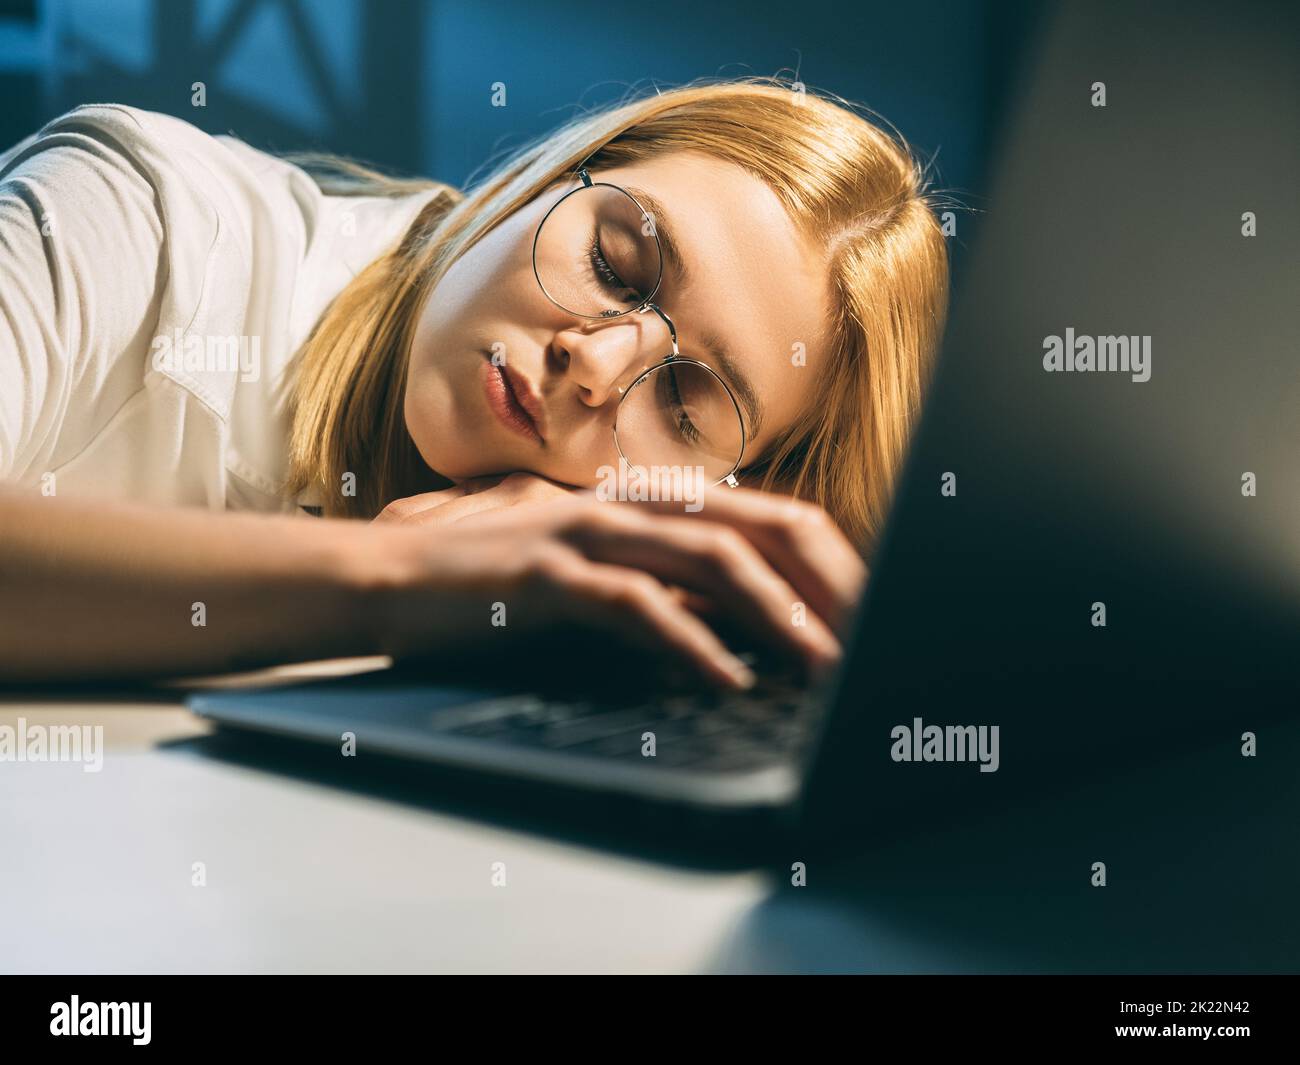 Étude de nuit. Fatigue de travail. Une étudiante en lunettes de vue calme et fatiguée dormant avec un ordinateur portable ouvert allongé sur un bureau dans un lieu de travail sombre. Banque D'Images